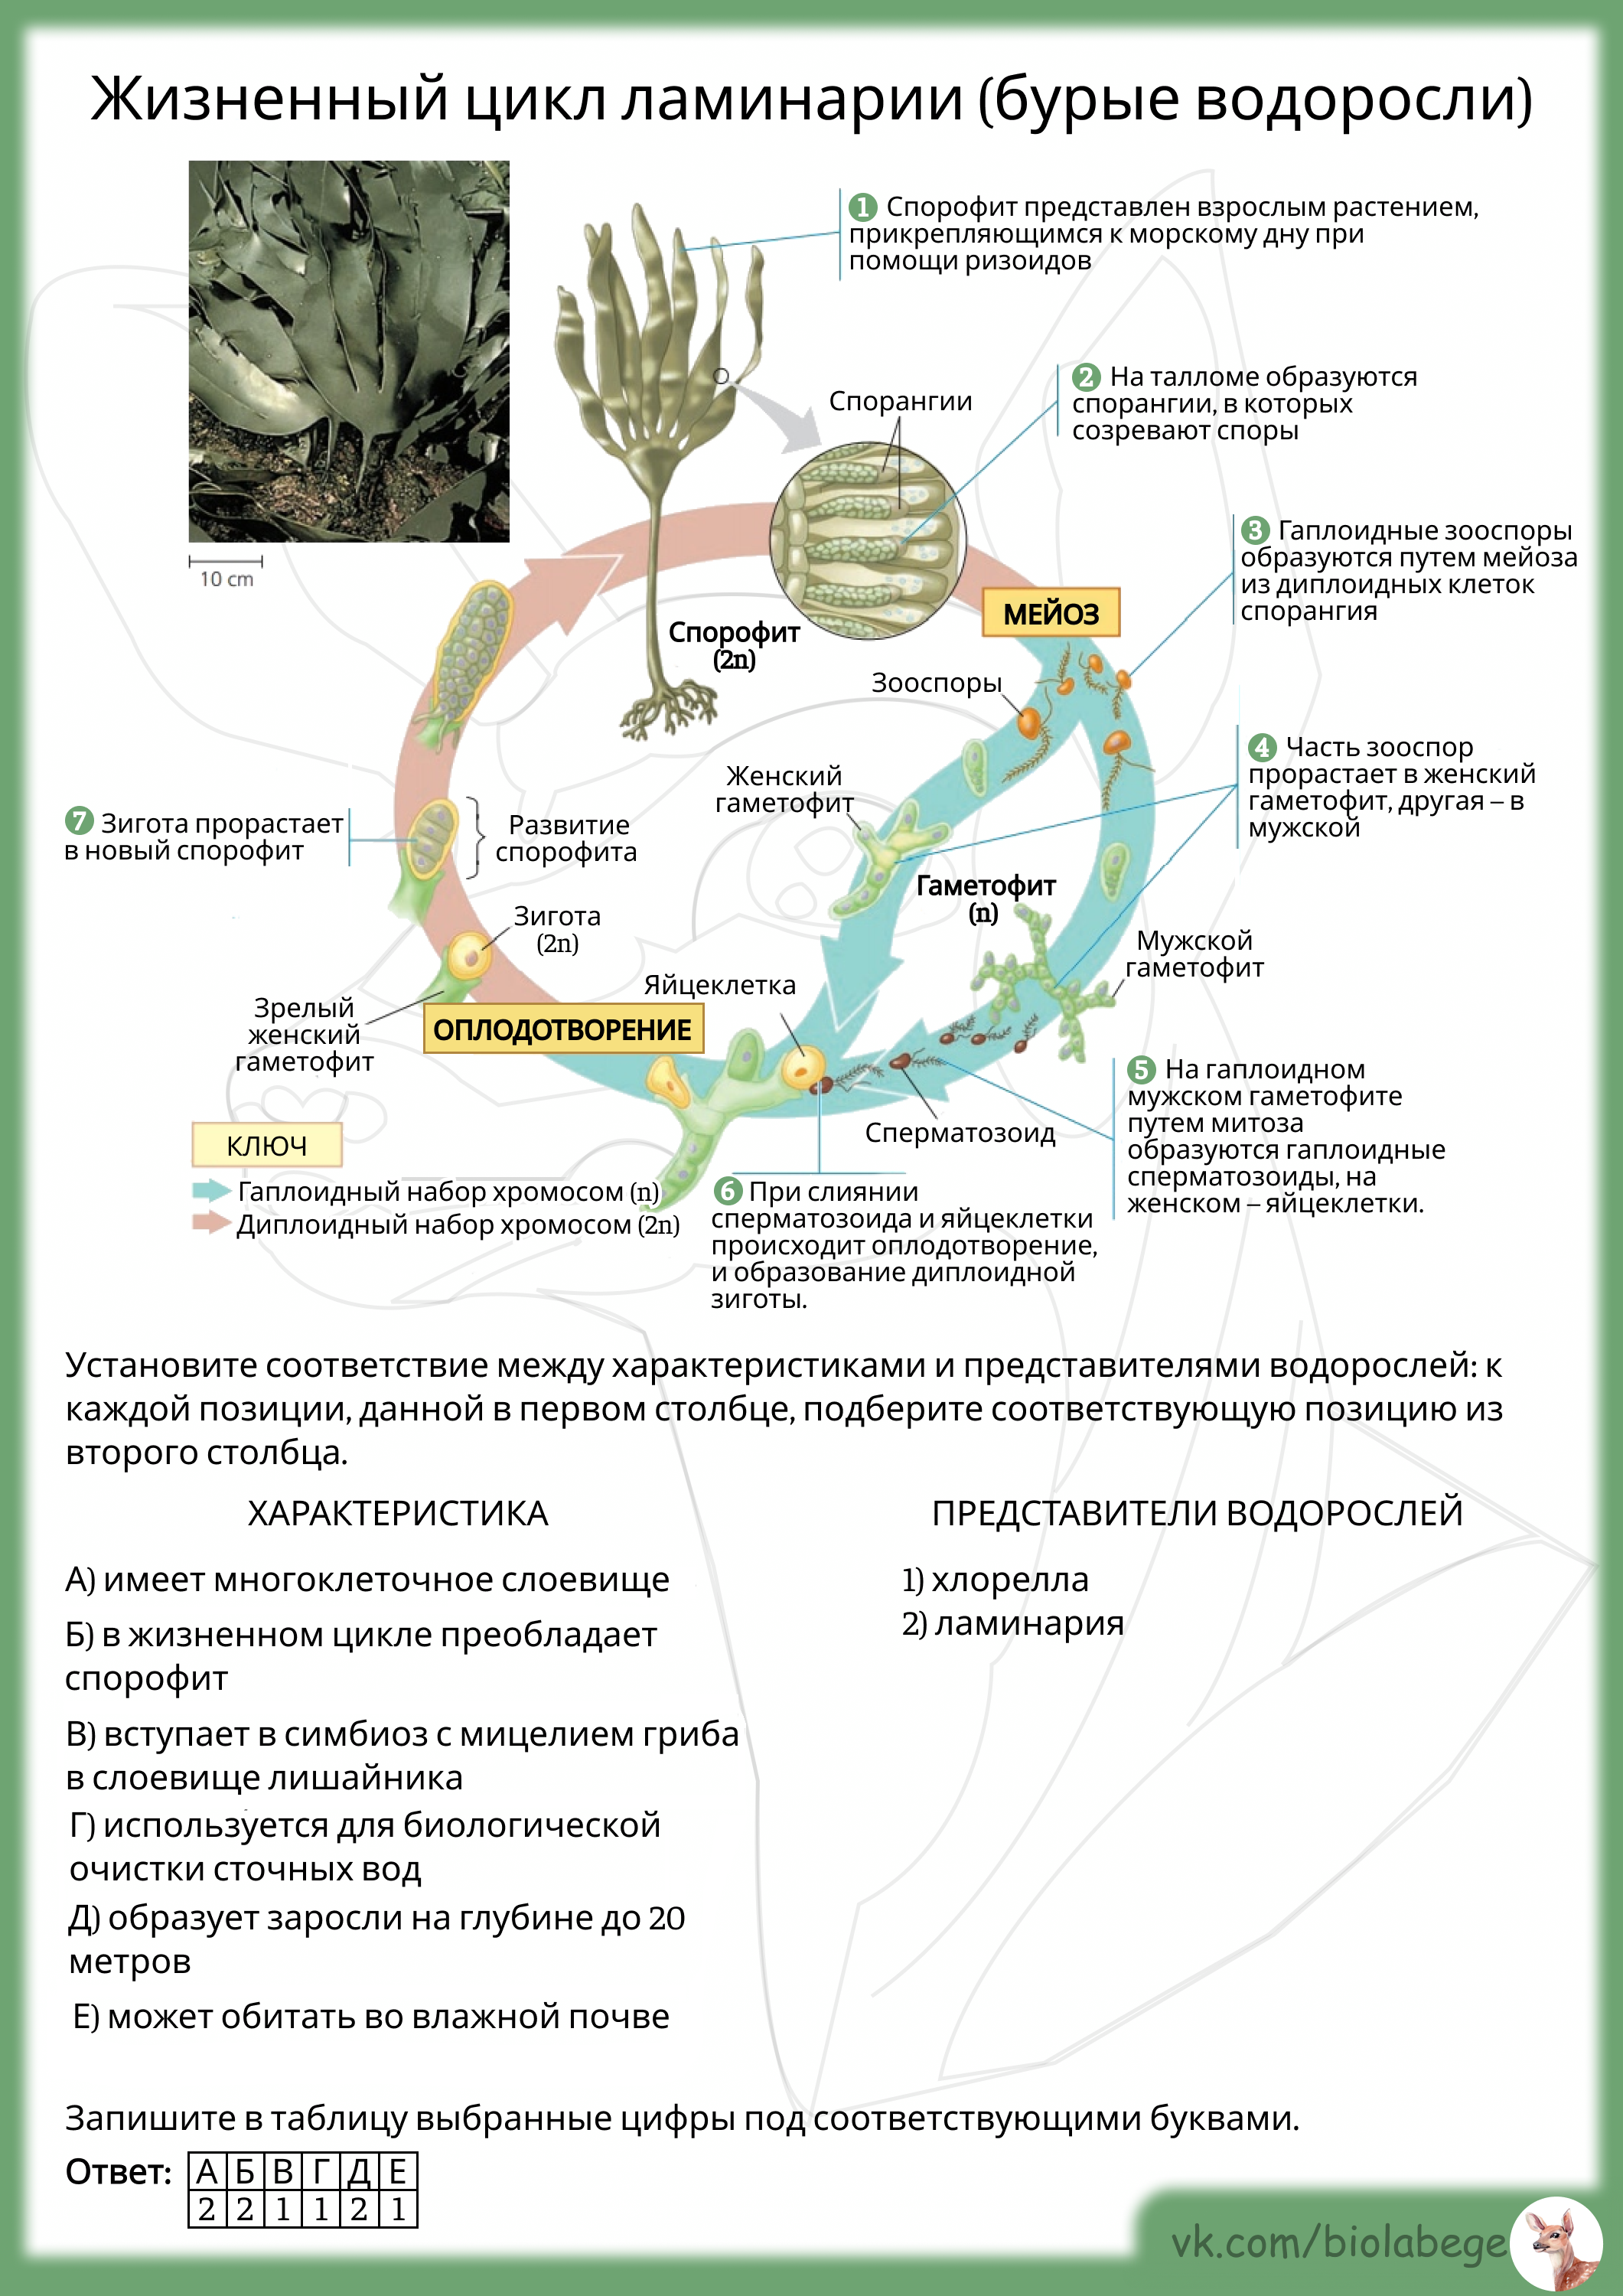 Жизненный цикл ламинарии ЕГЭ биология. Жизненный цикл водорослей ЕГЭ биология. Бурая водоросль ламинария цикл развития. Жизненный цикл бурых водорослей. Стадия жизненного цикла водорослей